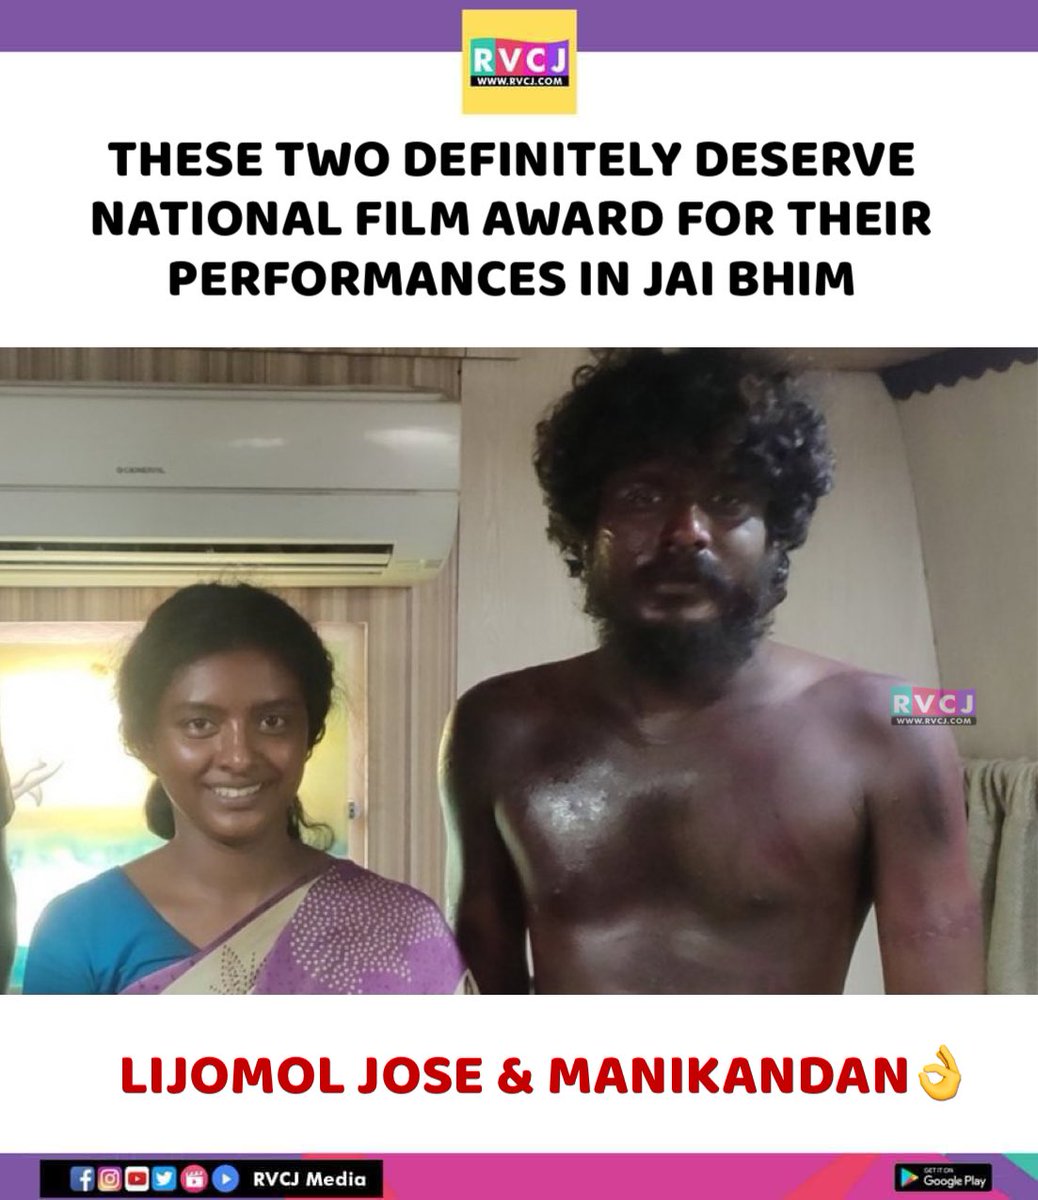 Their performances 🤯🙌 @jose_lijomol 
#jaibhim #lijomol #lijomoljose #manikandan #suriya #kollywood #tamilcinema #tamilmovie #rvcjmovies